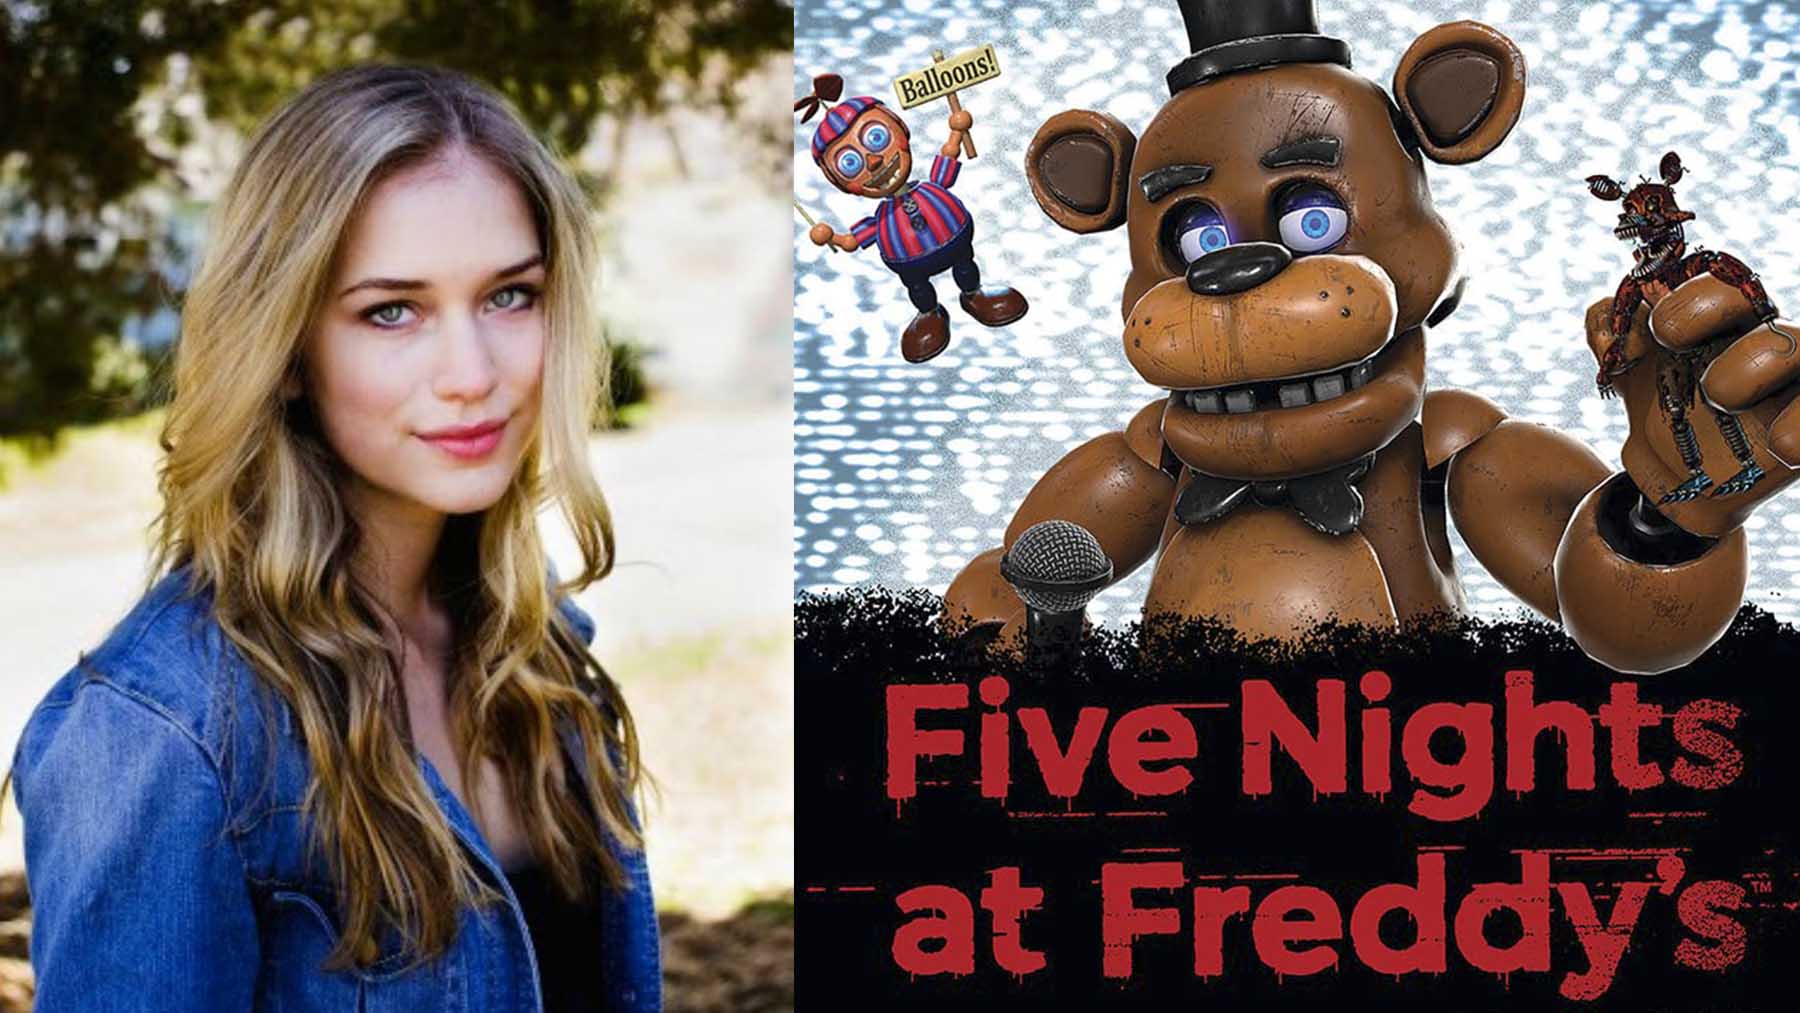 La película del videojuego ‘Five Nights at Freddy’s’ ficha a la actriz Elizabeth Lail